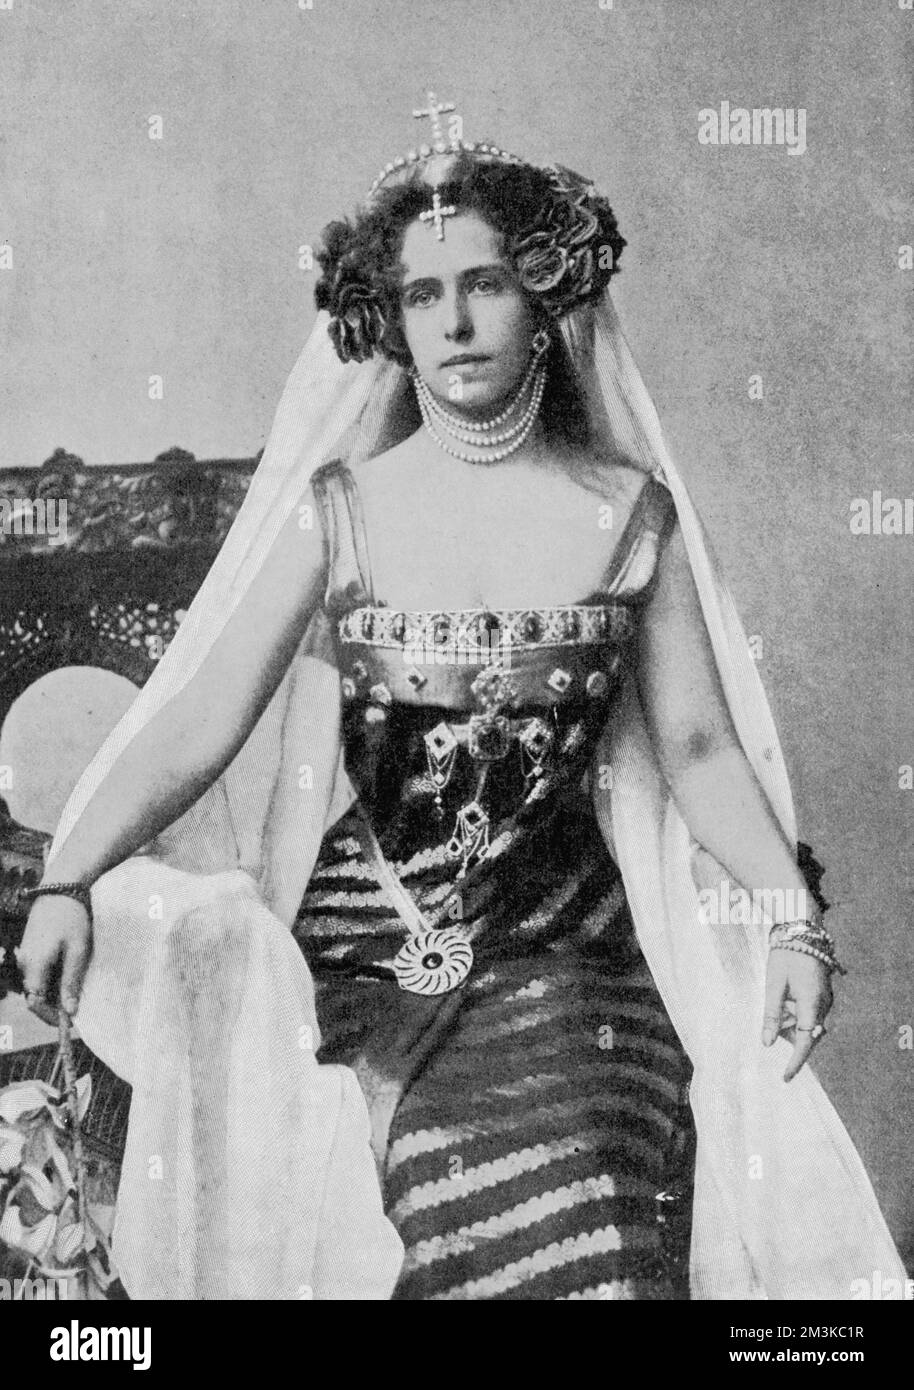 Marie Alexandra Victoria, membro della famiglia reale britannica, sposò il re Ferdinando i di Romania nel 1893, diventando regina consorte di Romania. 1875-1938 Foto Stock